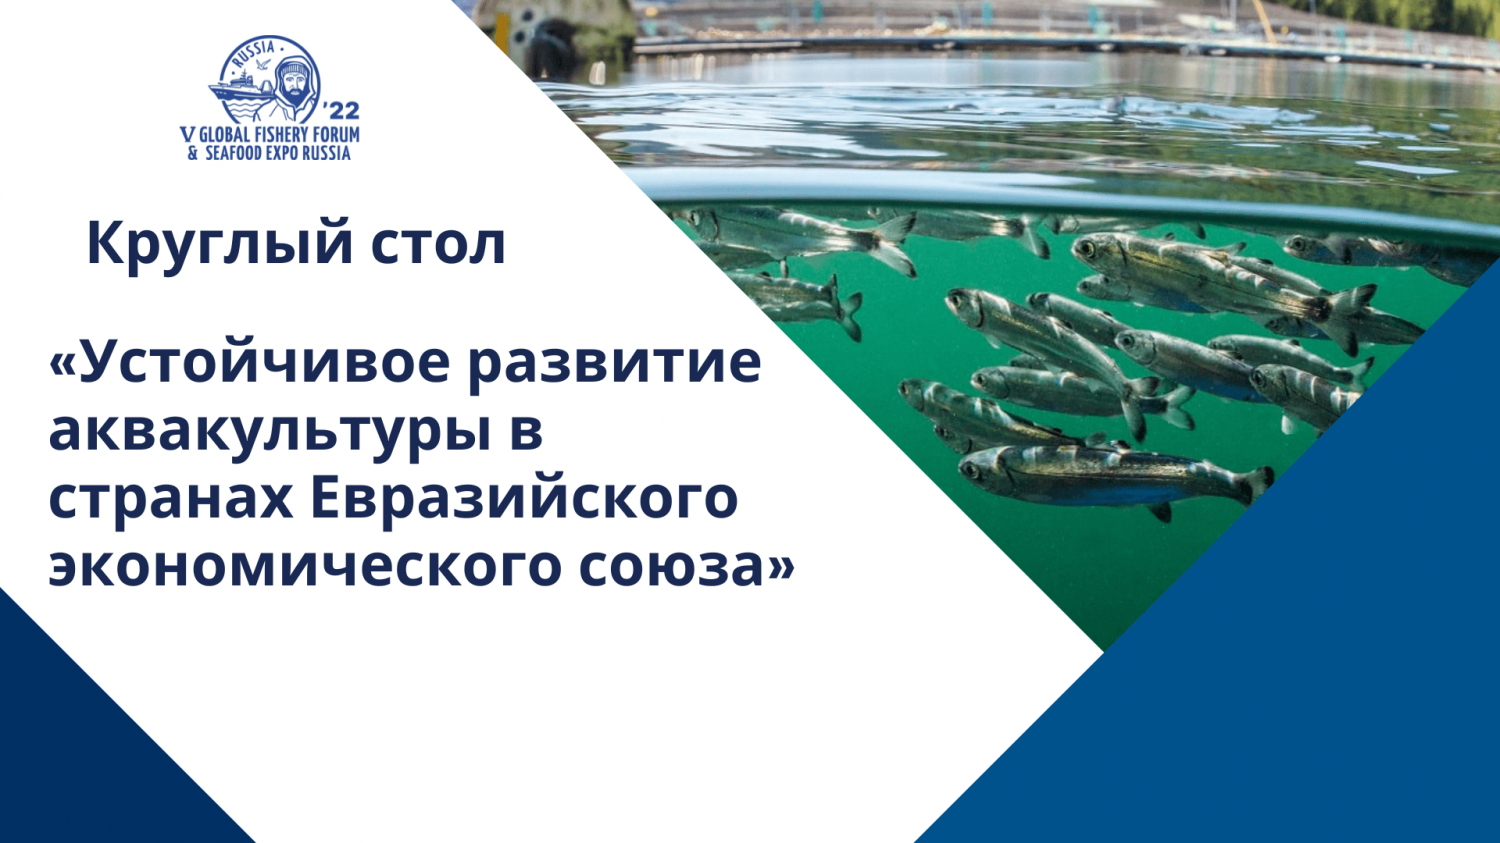 Развитие аквакультуры на Евразийском пространстве обсудят на Seafood Expo Russia